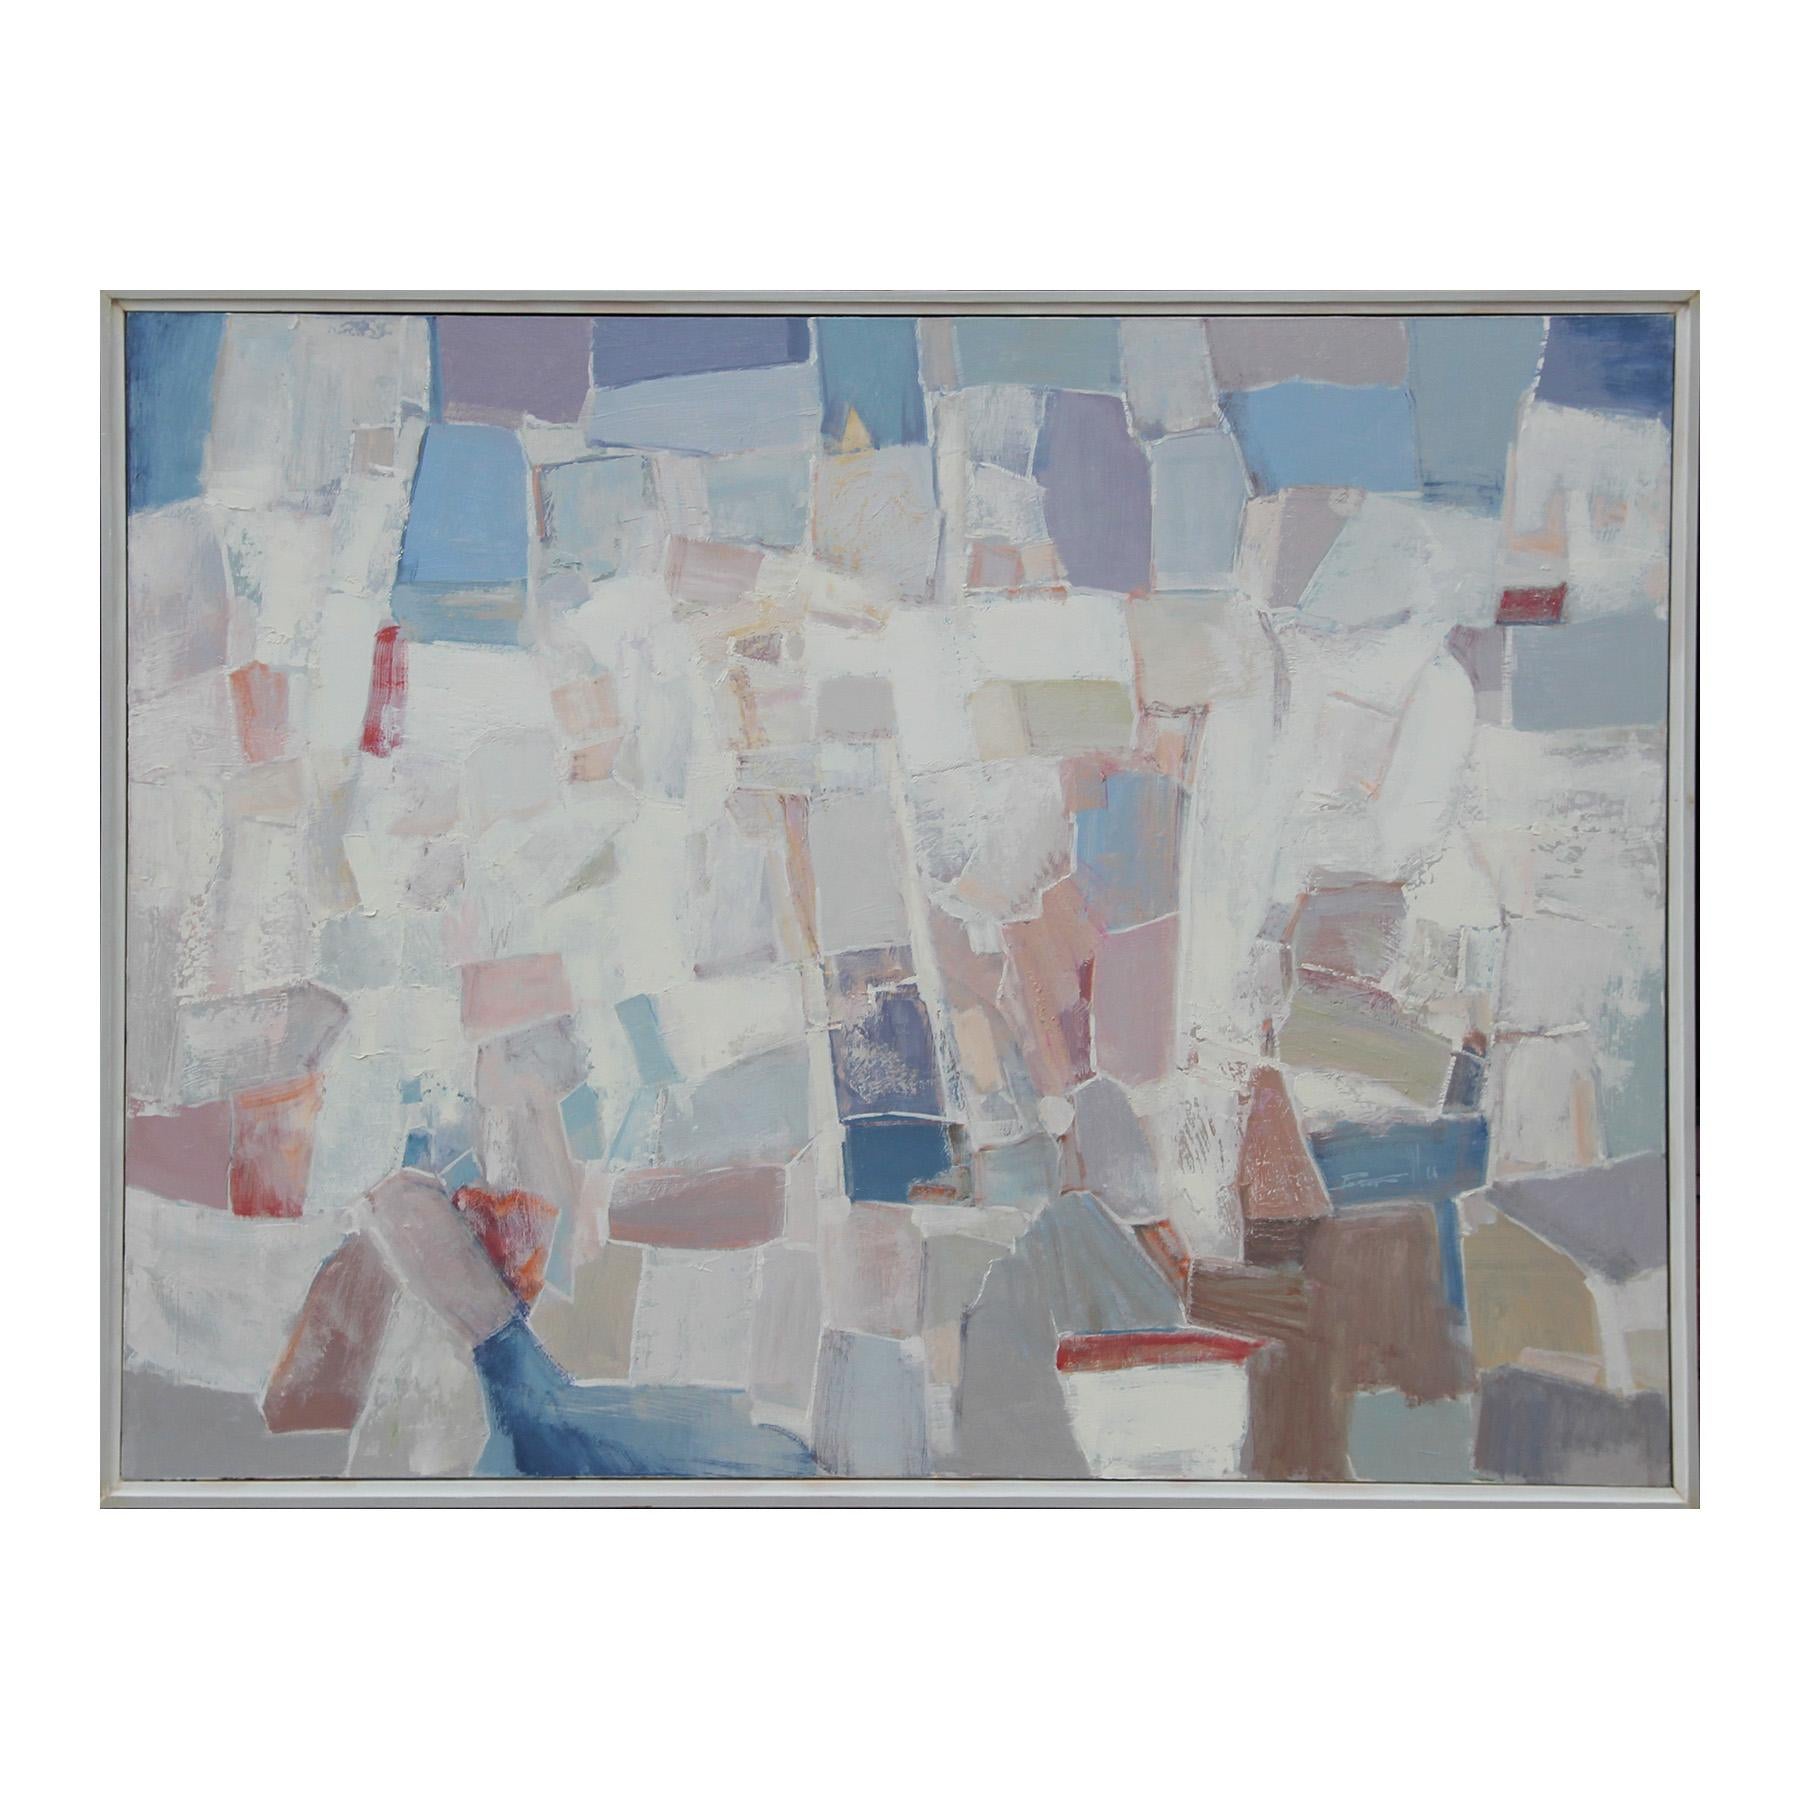 Landscape Painting Peter Wu - "La prière" Grande peinture abstraite pastel contemporaine en blocs de couleur